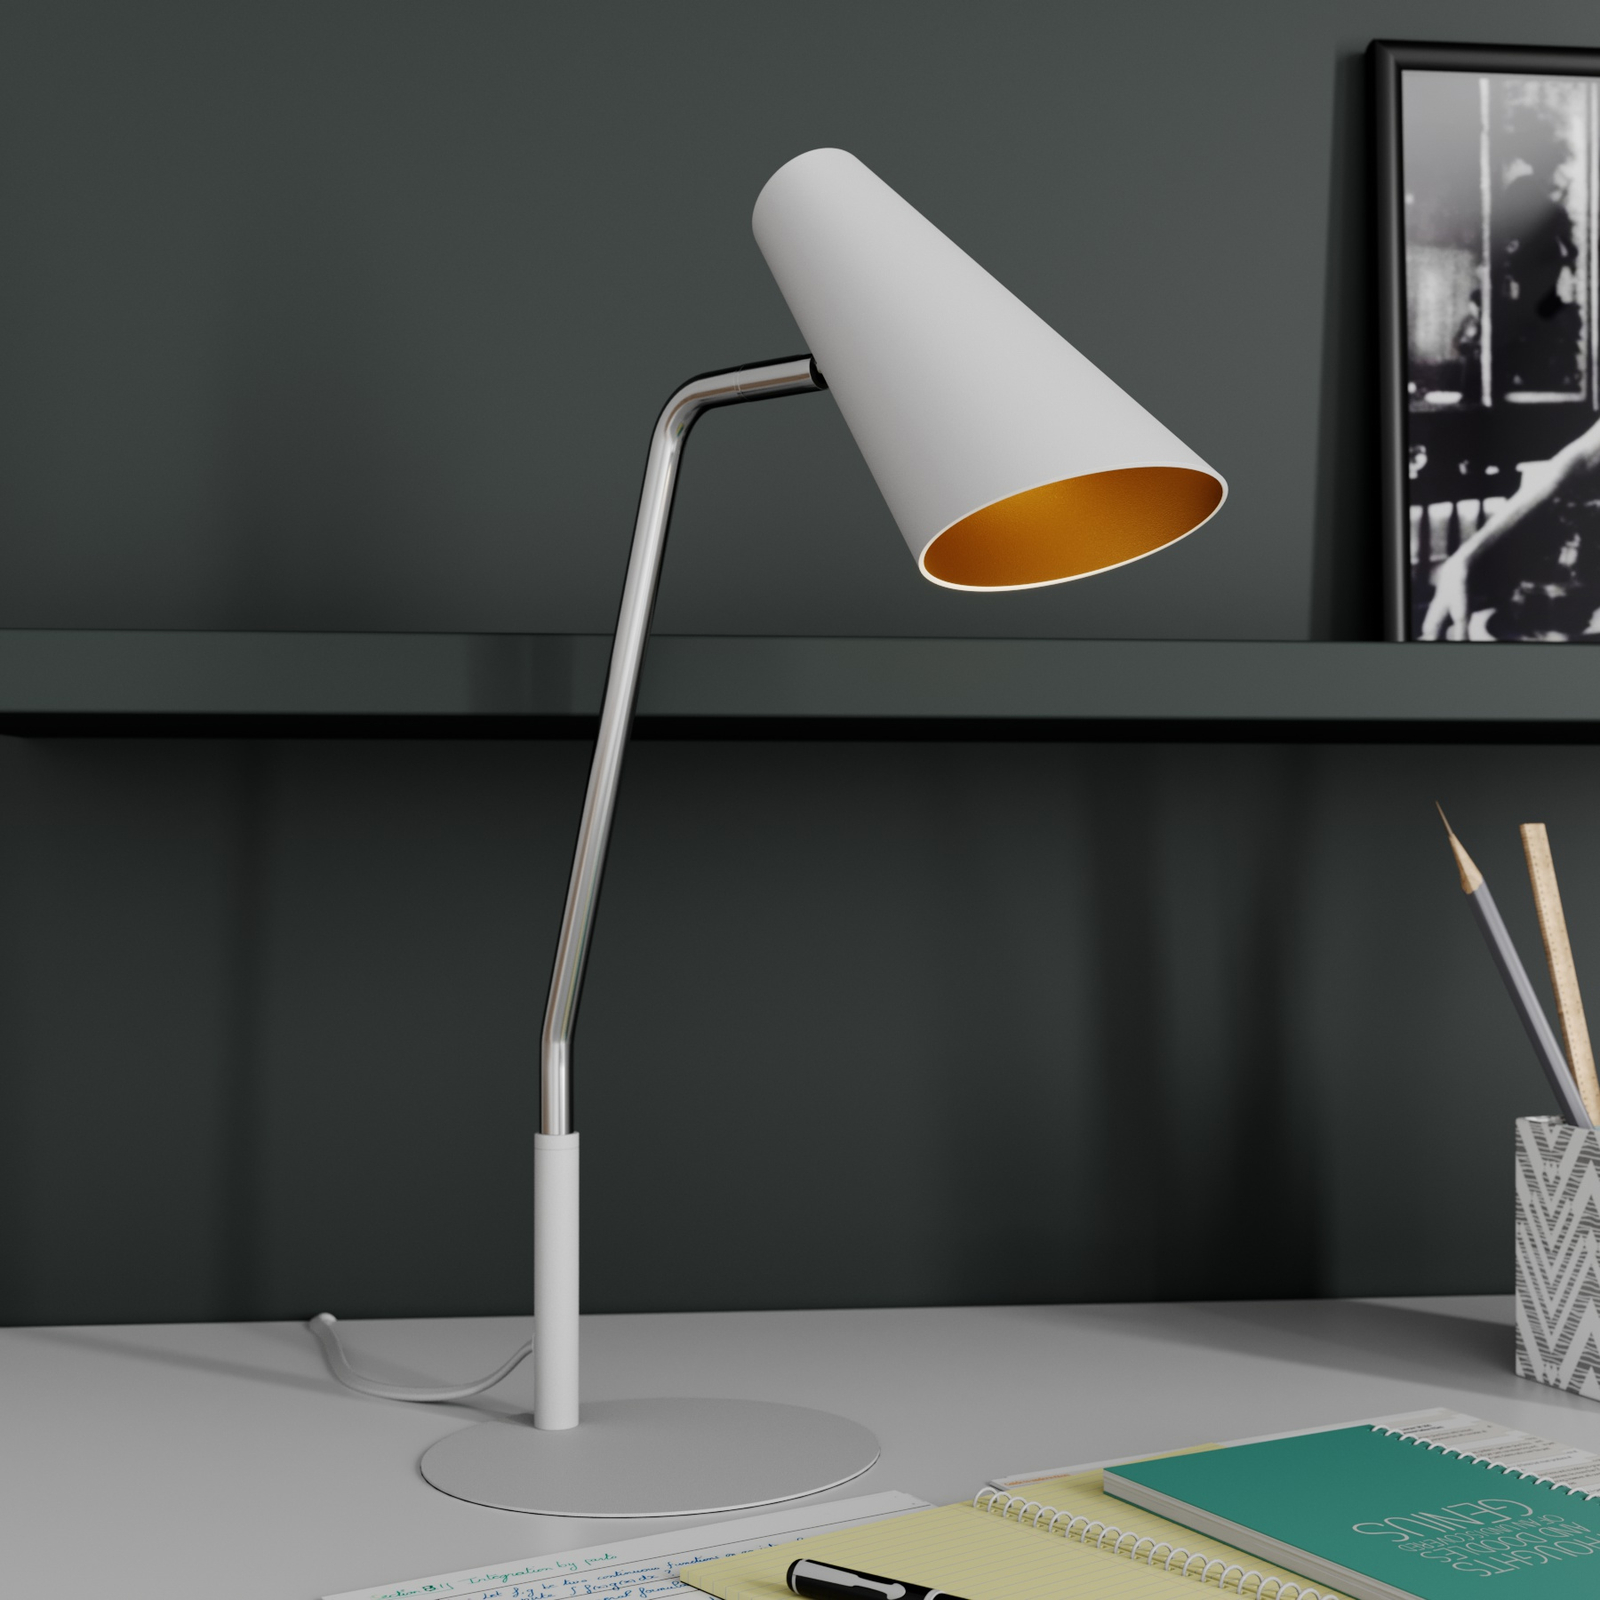 Lucande Wibke table lamp, white